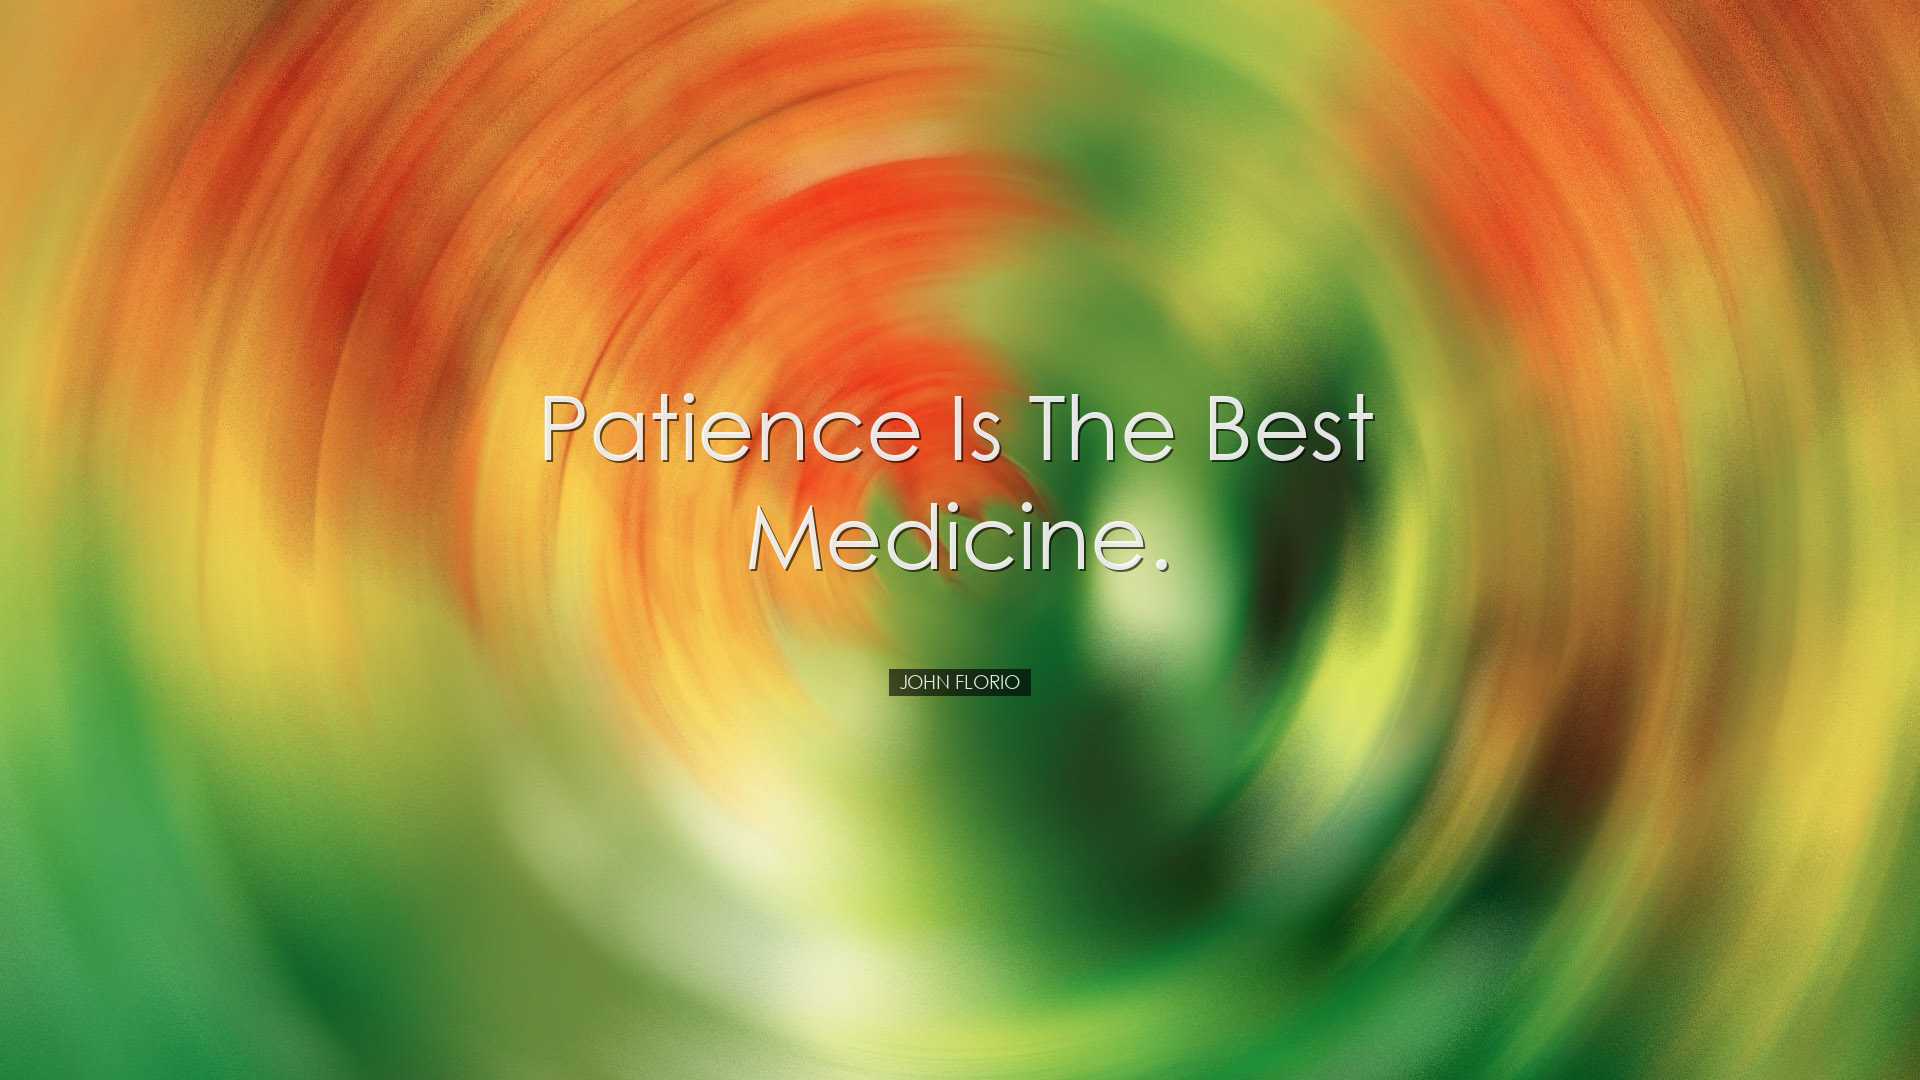 Patience is the best medicine. - John Florio